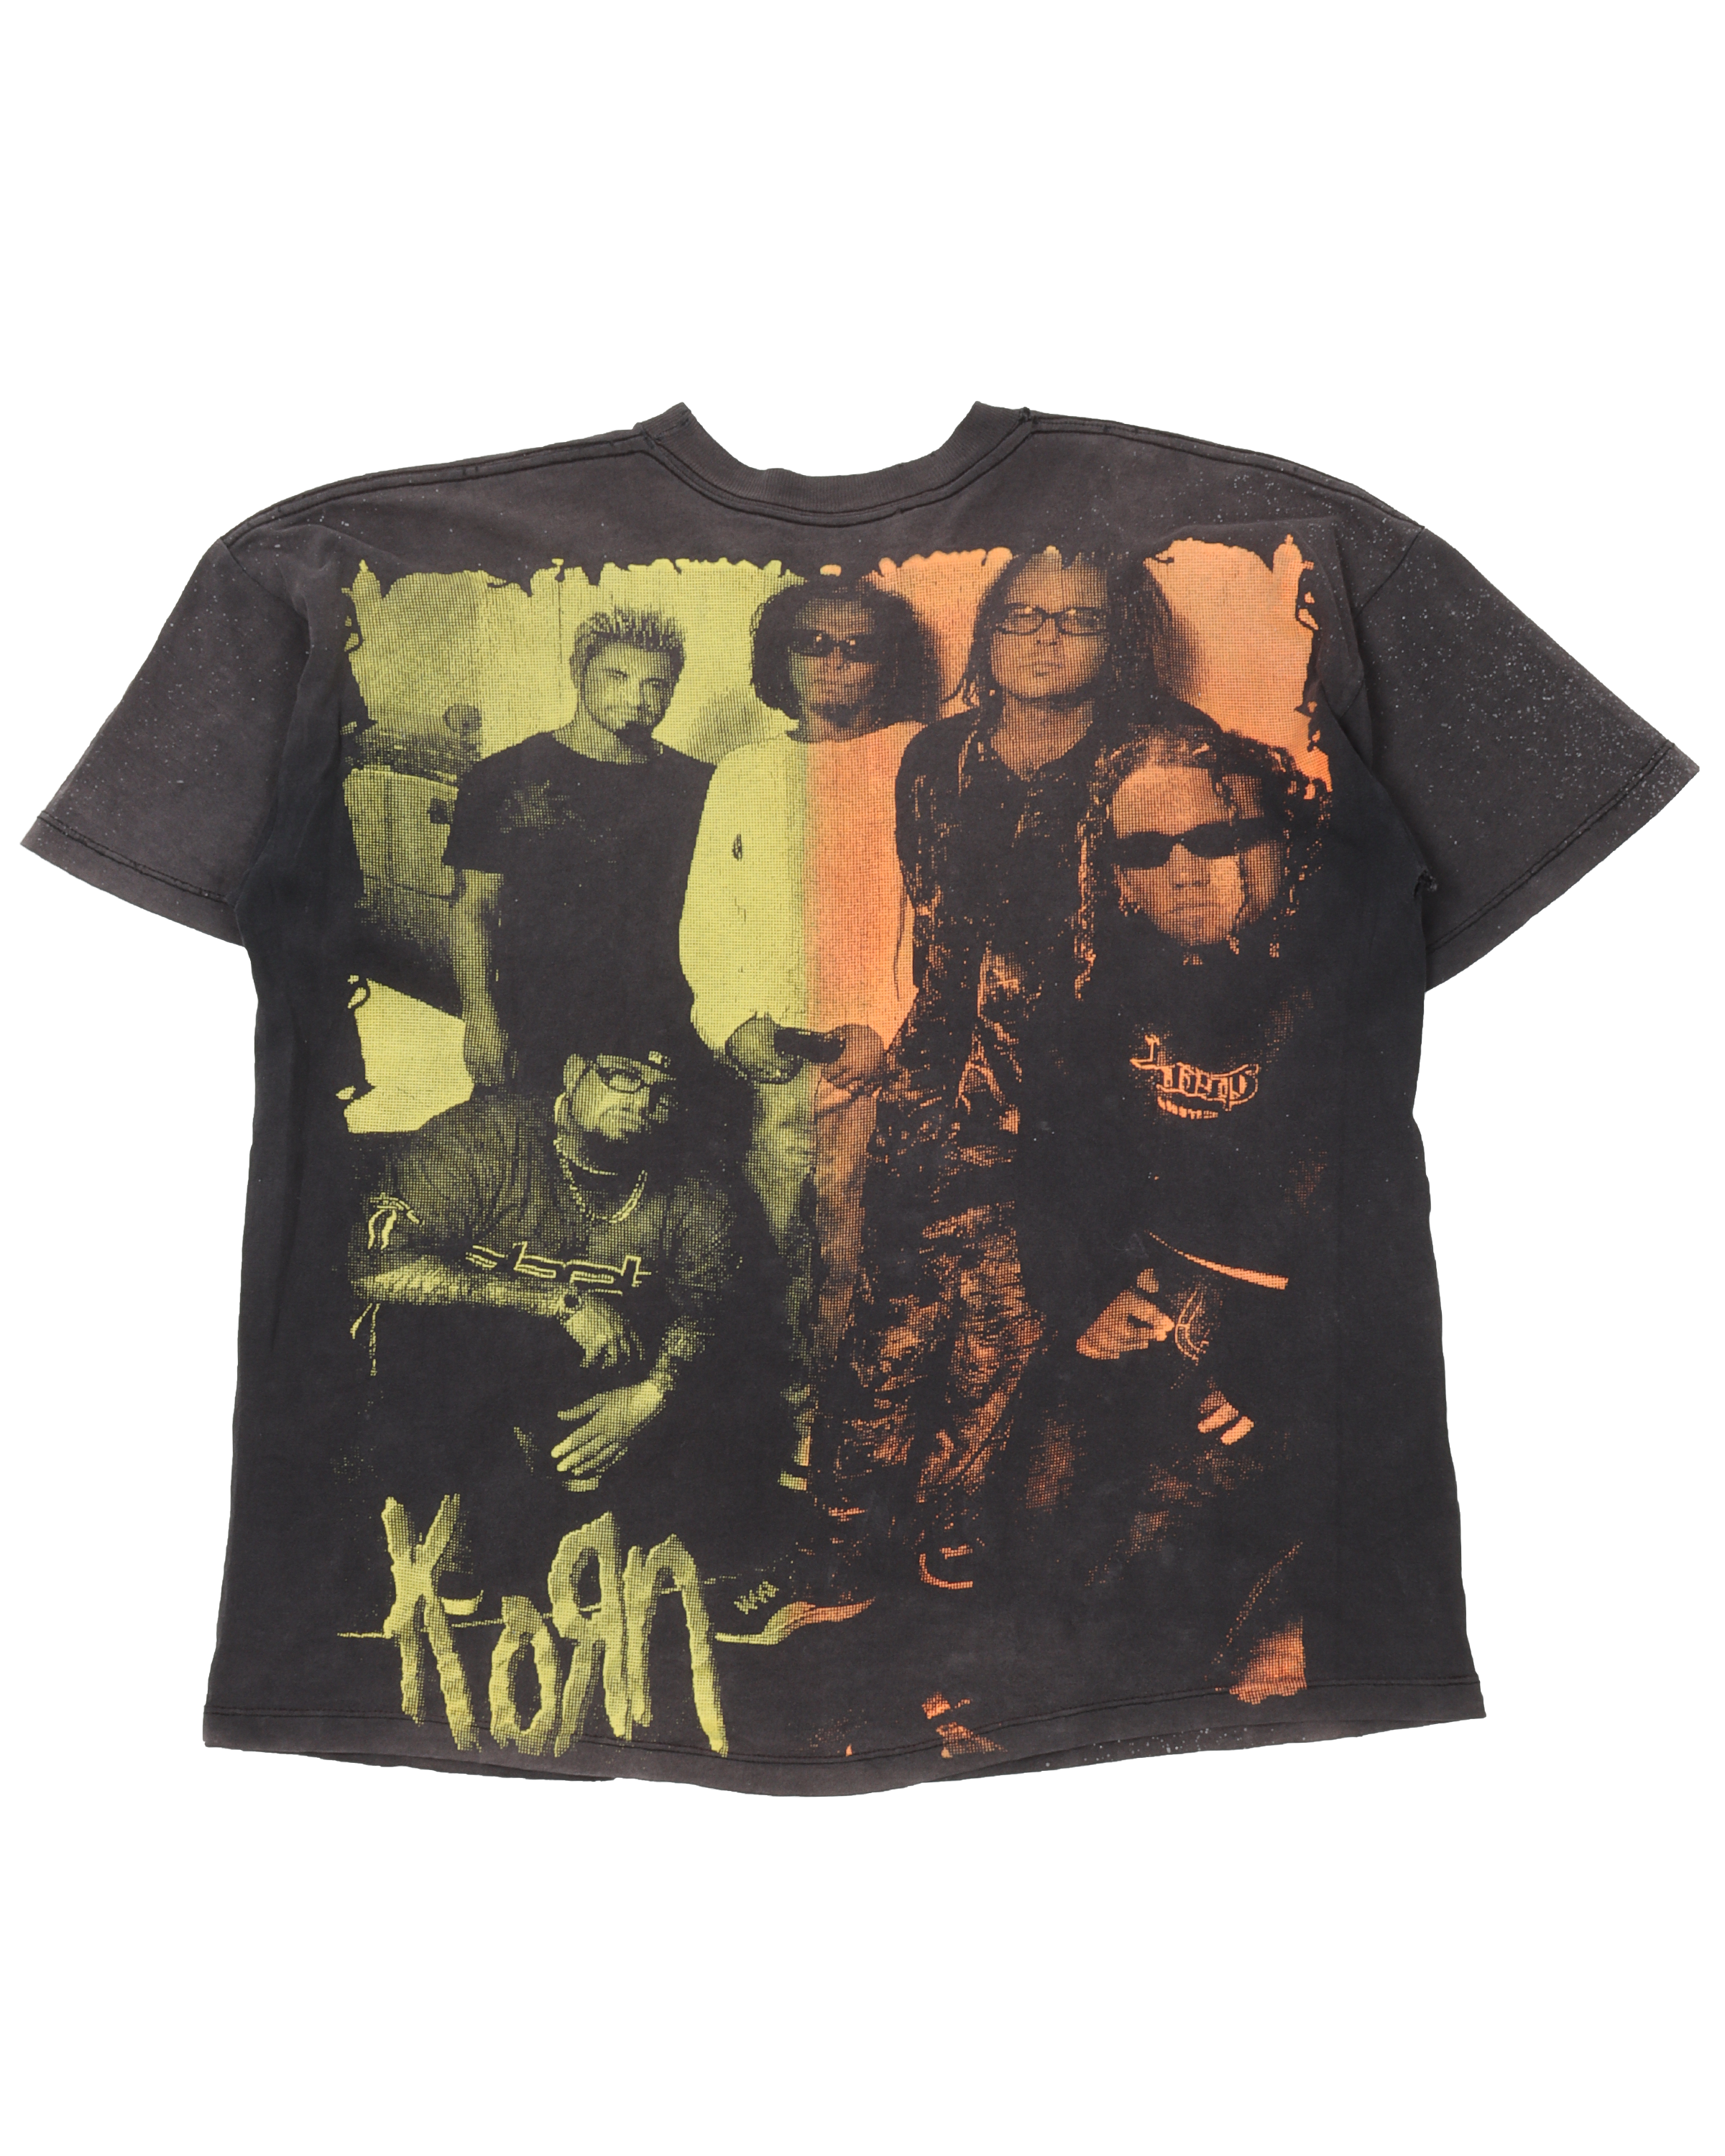 Korn Bootleg T-Shirt